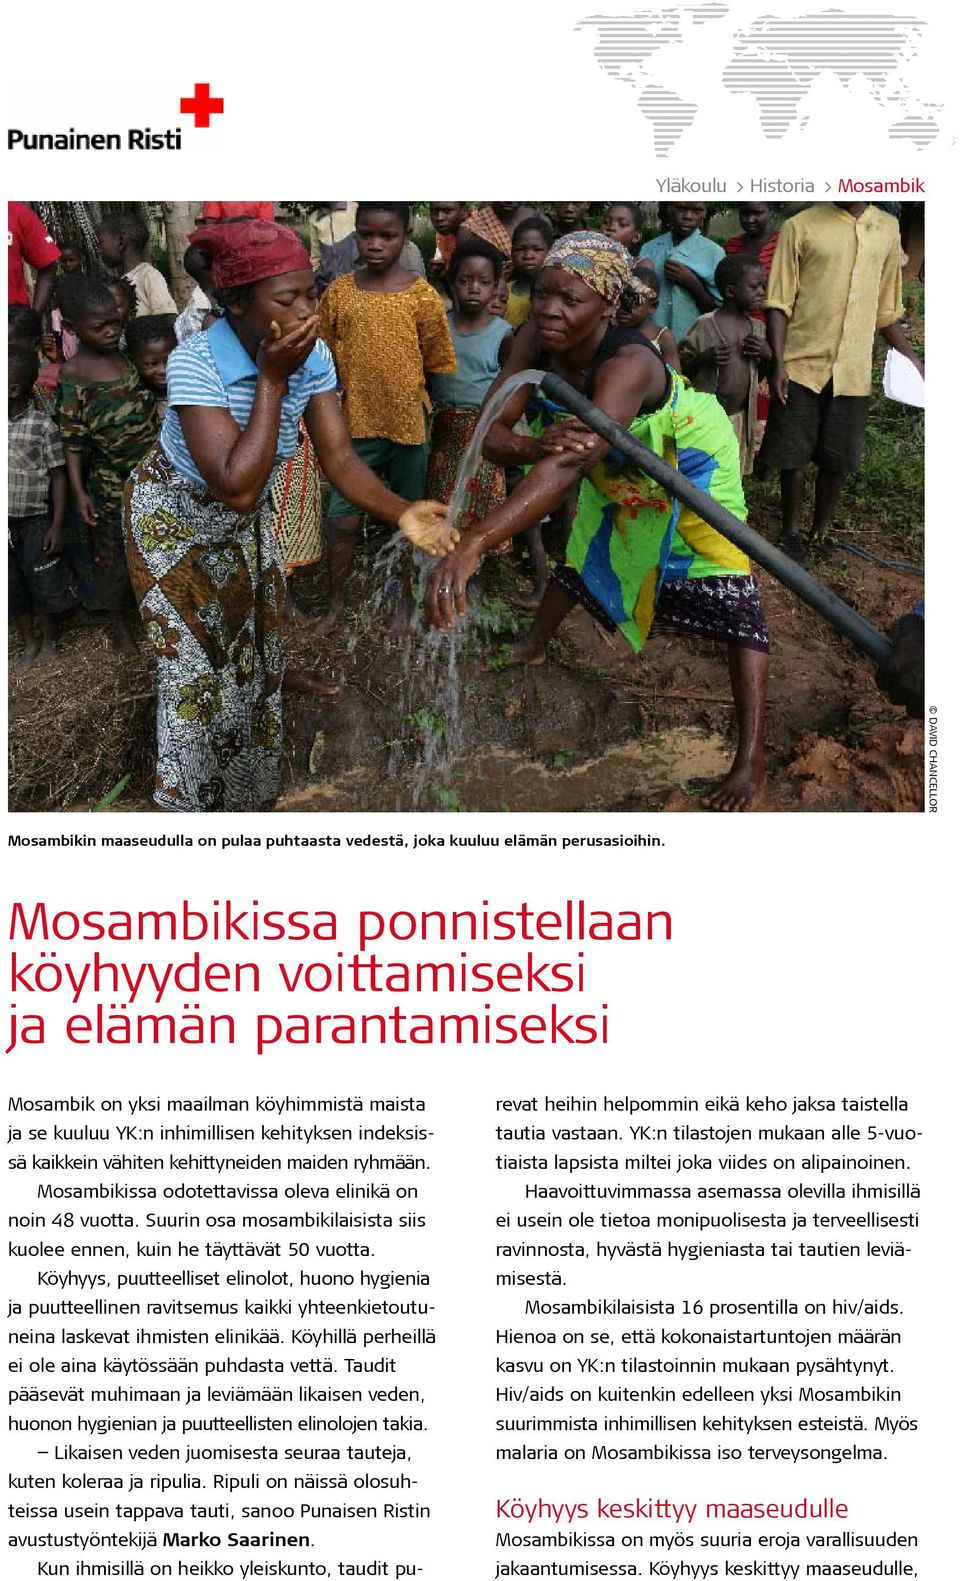 kehittyneiden maiden ryhmään. Mosambikissa odotettavissa oleva elinikä on noin 48 vuotta. Suurin osa mosambikilaisista siis kuolee ennen, kuin he täyttävät 50 vuotta.